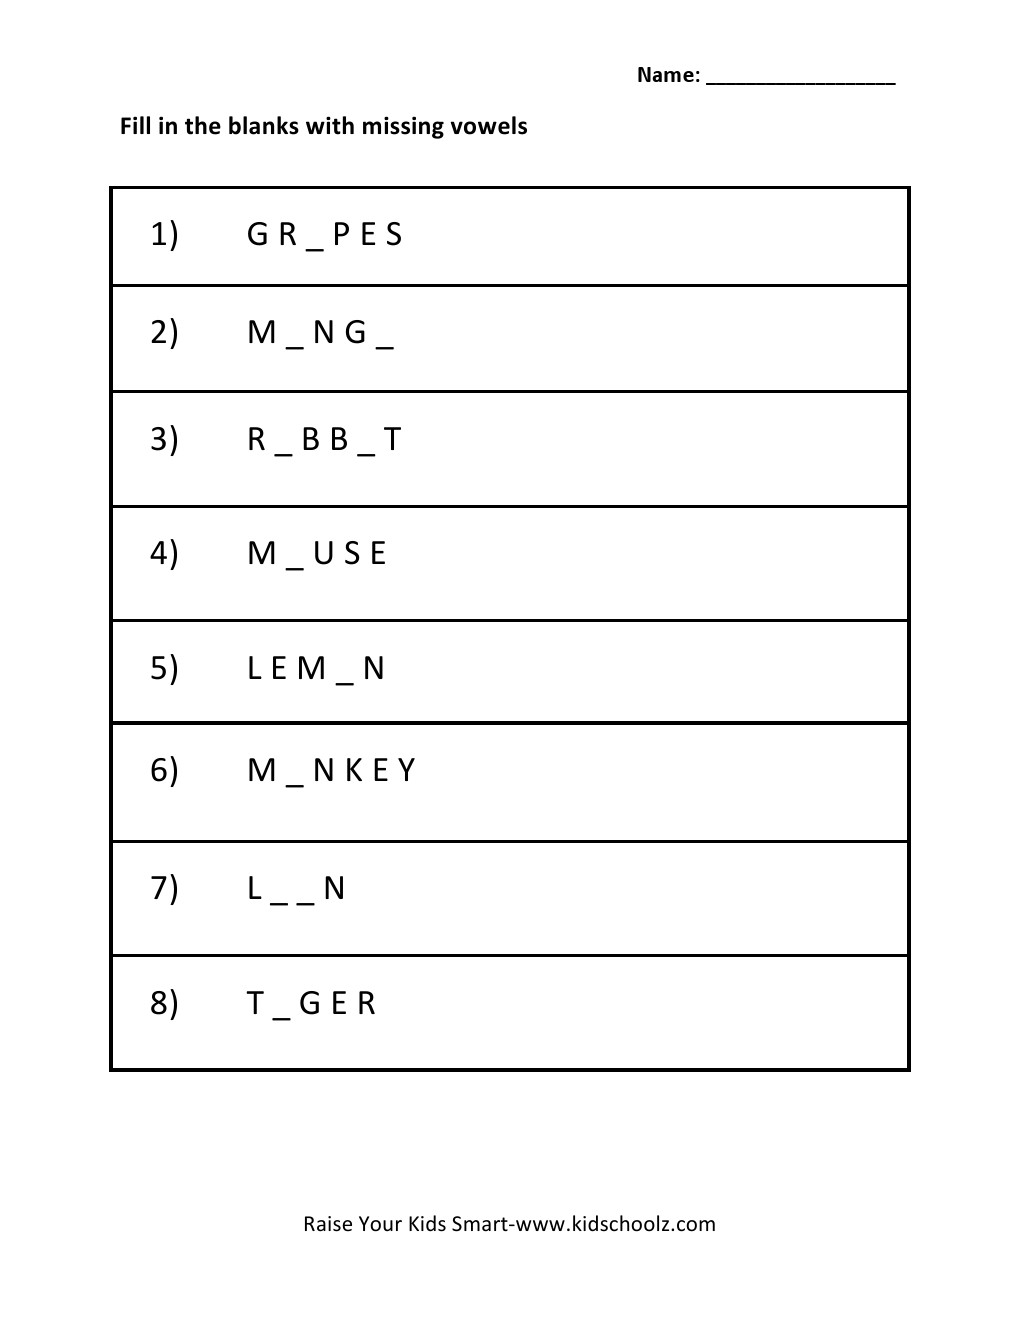 Grade 1 - Missing Vowels Worksheet